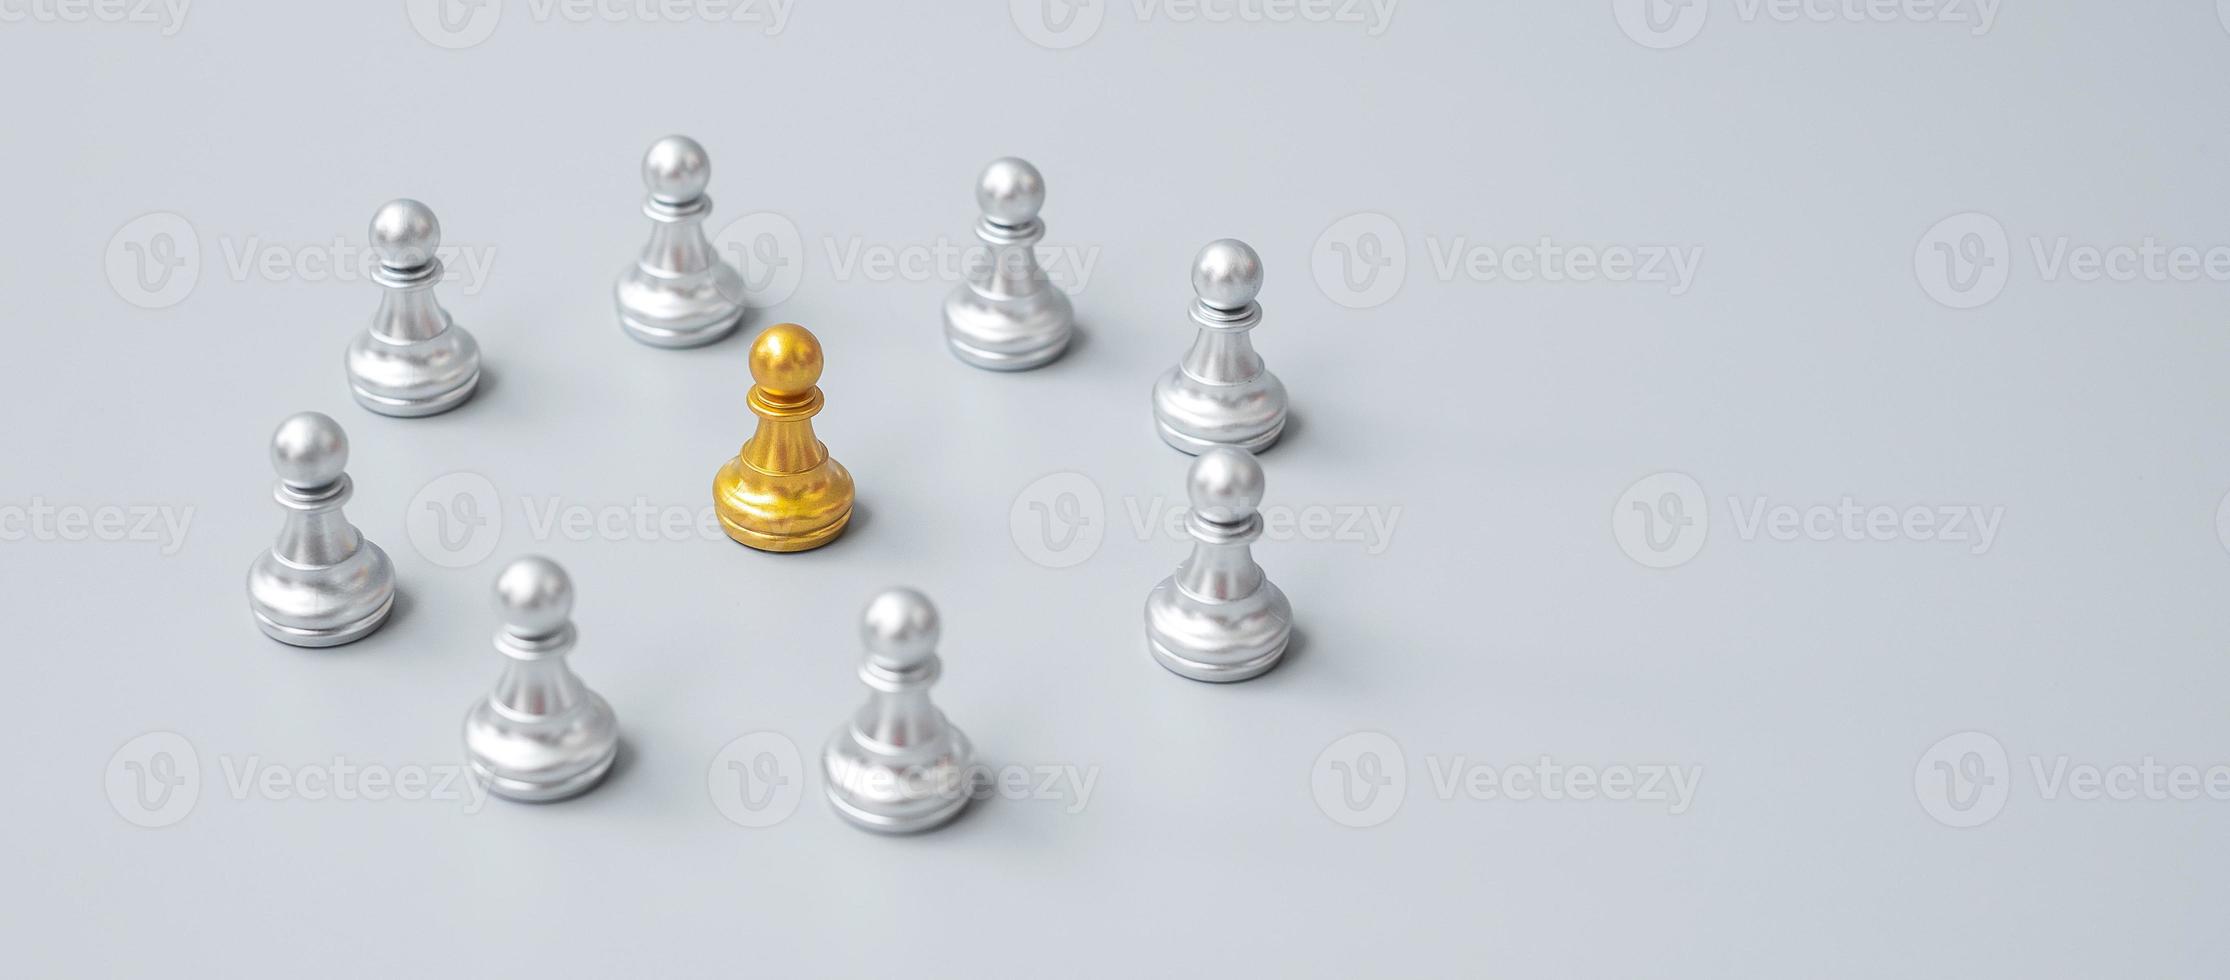 peças de peão de xadrez dourado ou empresário líder líder com círculo de homens de prata. conceito de liderança, negócios, equipe e trabalho em equipe foto